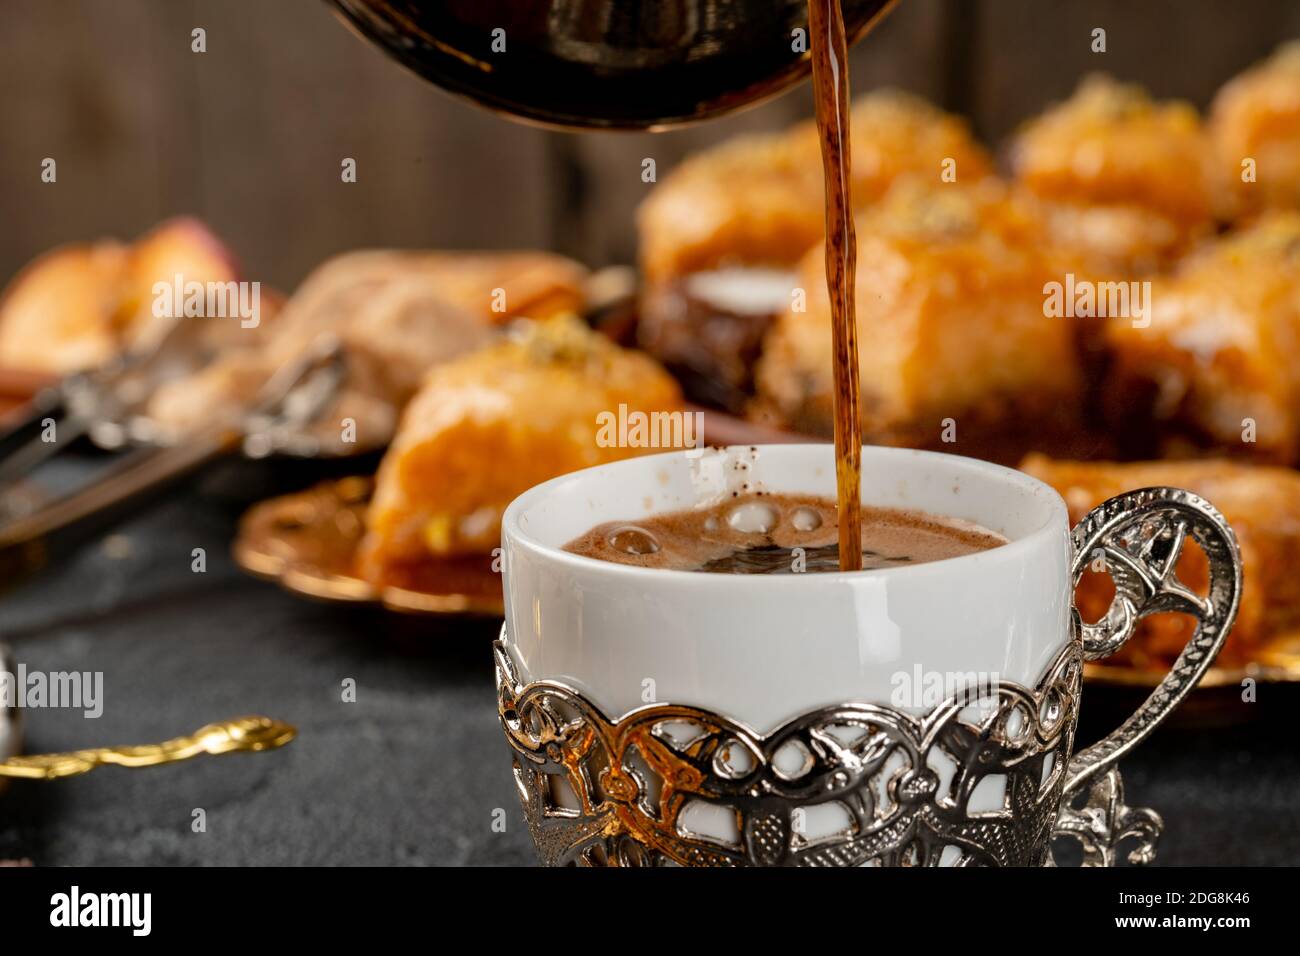 Tasse Kaffee und türkisches Gebäck auf dunkler Oberfläche Stockfoto